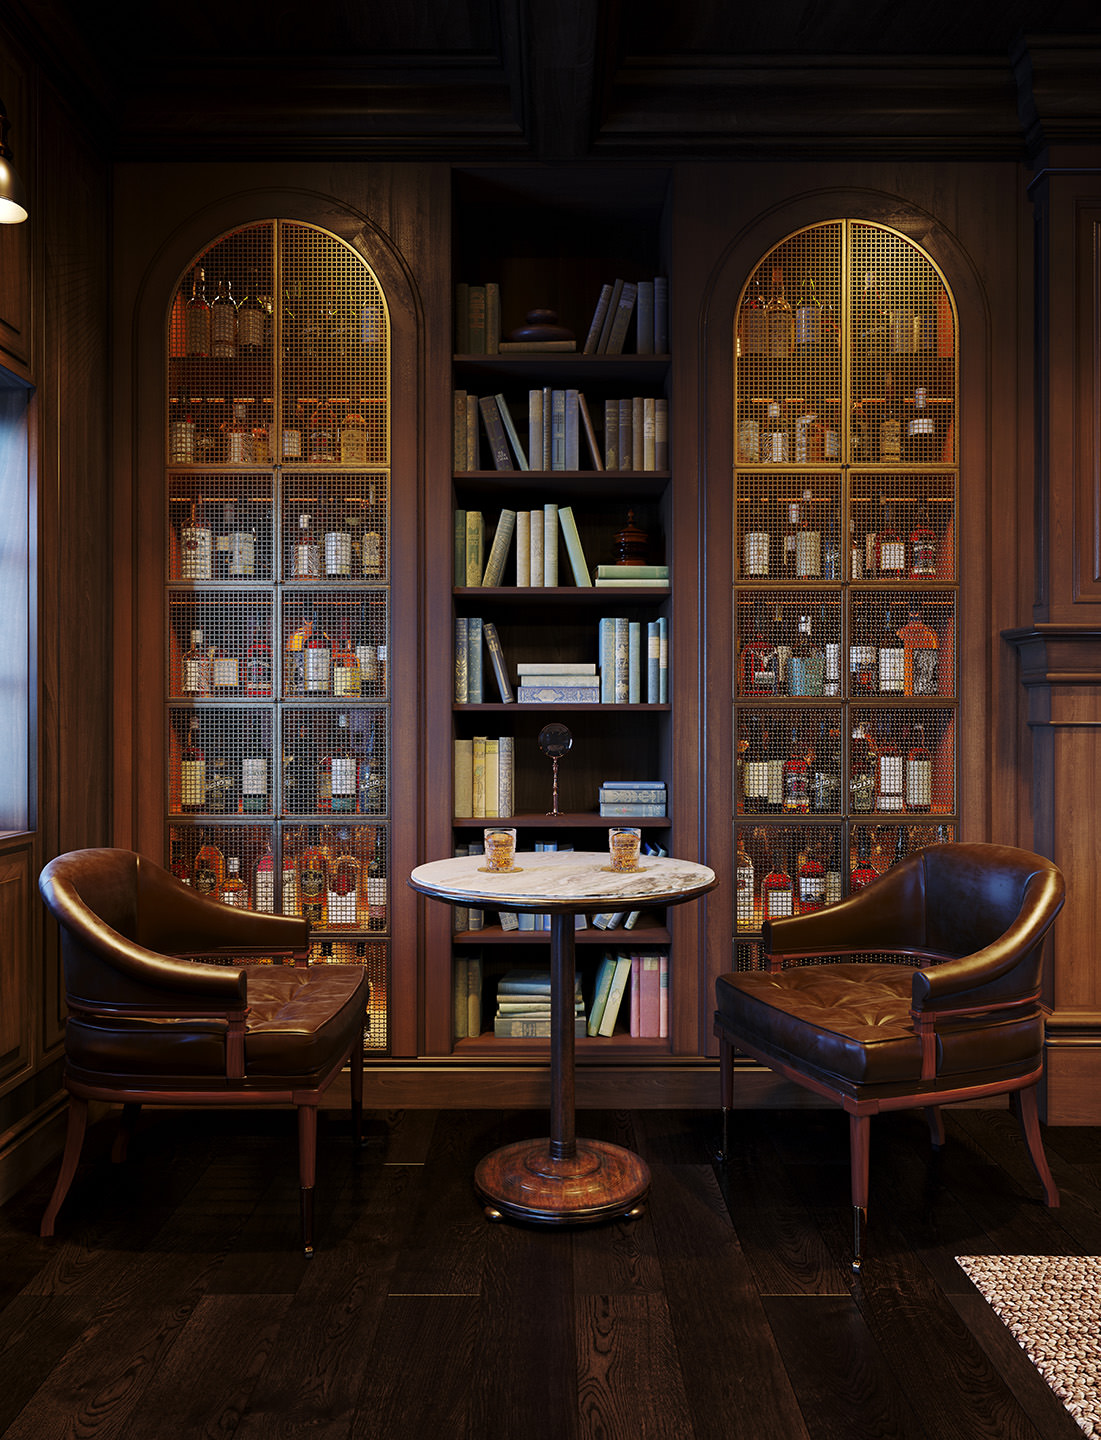 Image de synthèse intérieure 3D de la bibliothèque avec deux chaises en cuir et deux verres de whisky servis sur la table